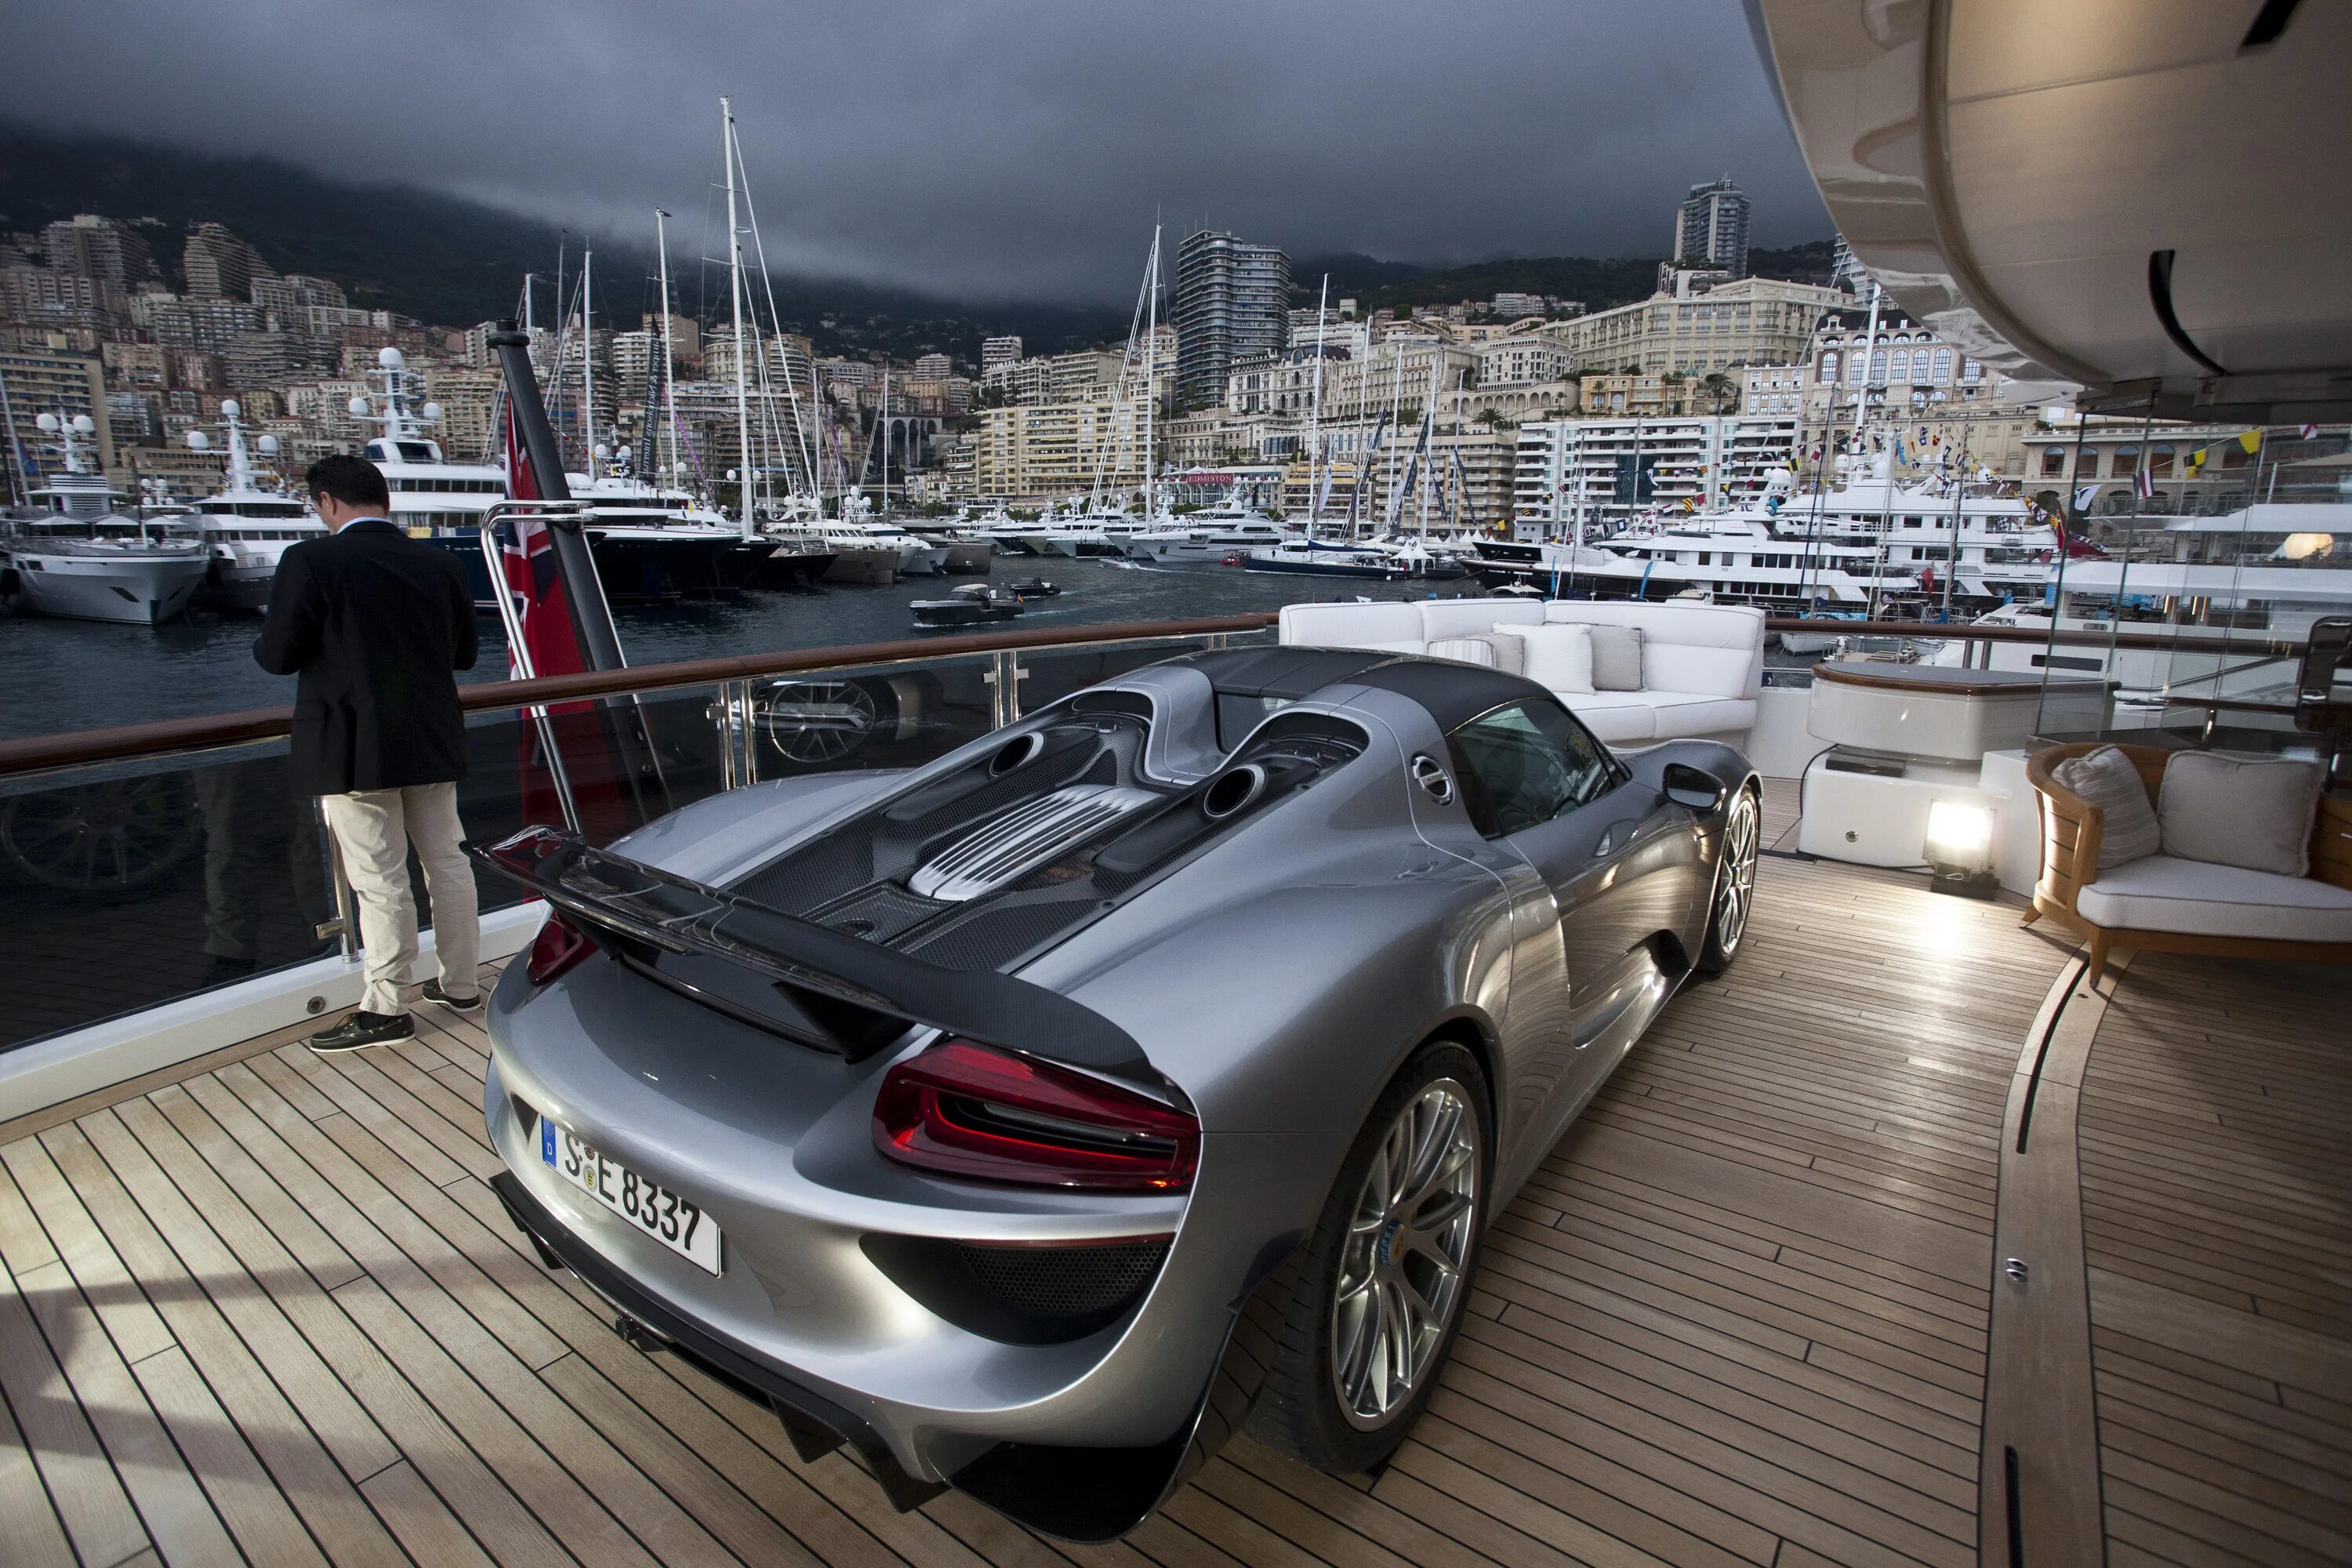 European luxury cars. Роскошь и богатство. Богатая жизнь. Роскошные машины. Богатая роскошная жизнь.